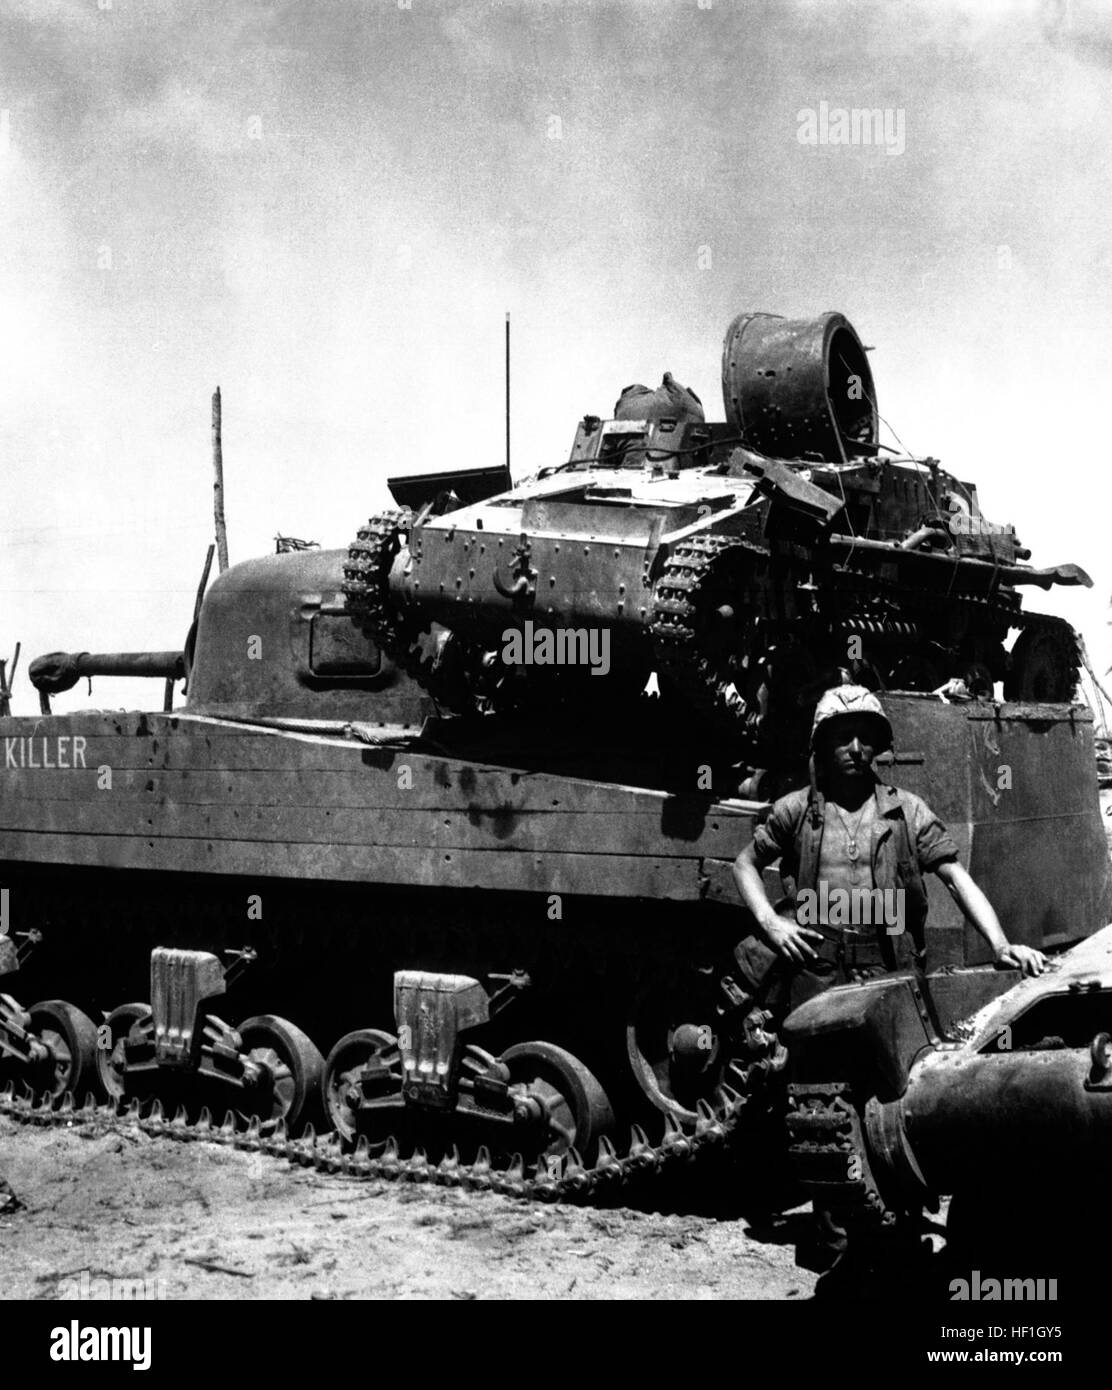 Kwajalein-Atoll.  PFC. N.E. Carling steht neben den mittleren Panzer der "Killer" auf einen toten japanischen leichten Panzer montiert ist.  2. Februar 1944.  Tennelly.  (Marine Corps) NARA-Datei #: 127-N-72208 & Konflikt Krieg Buch #: 859 erfasst japanische Panzer HD-SN-99-02518 Stockfoto